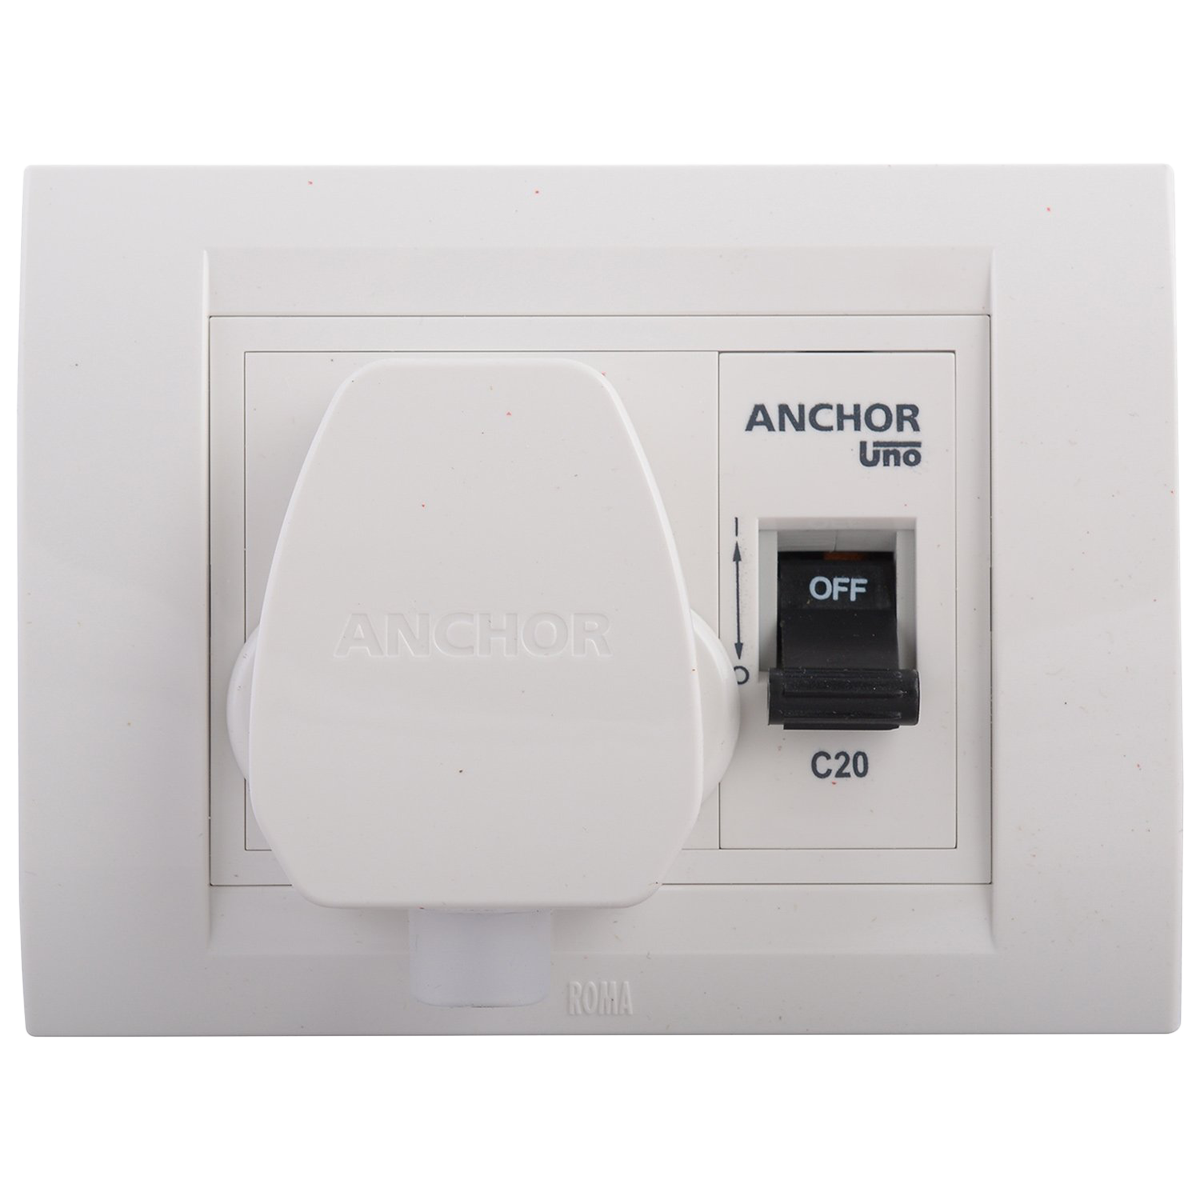 Anchor Uno Modular AC Box (98488, White)_1